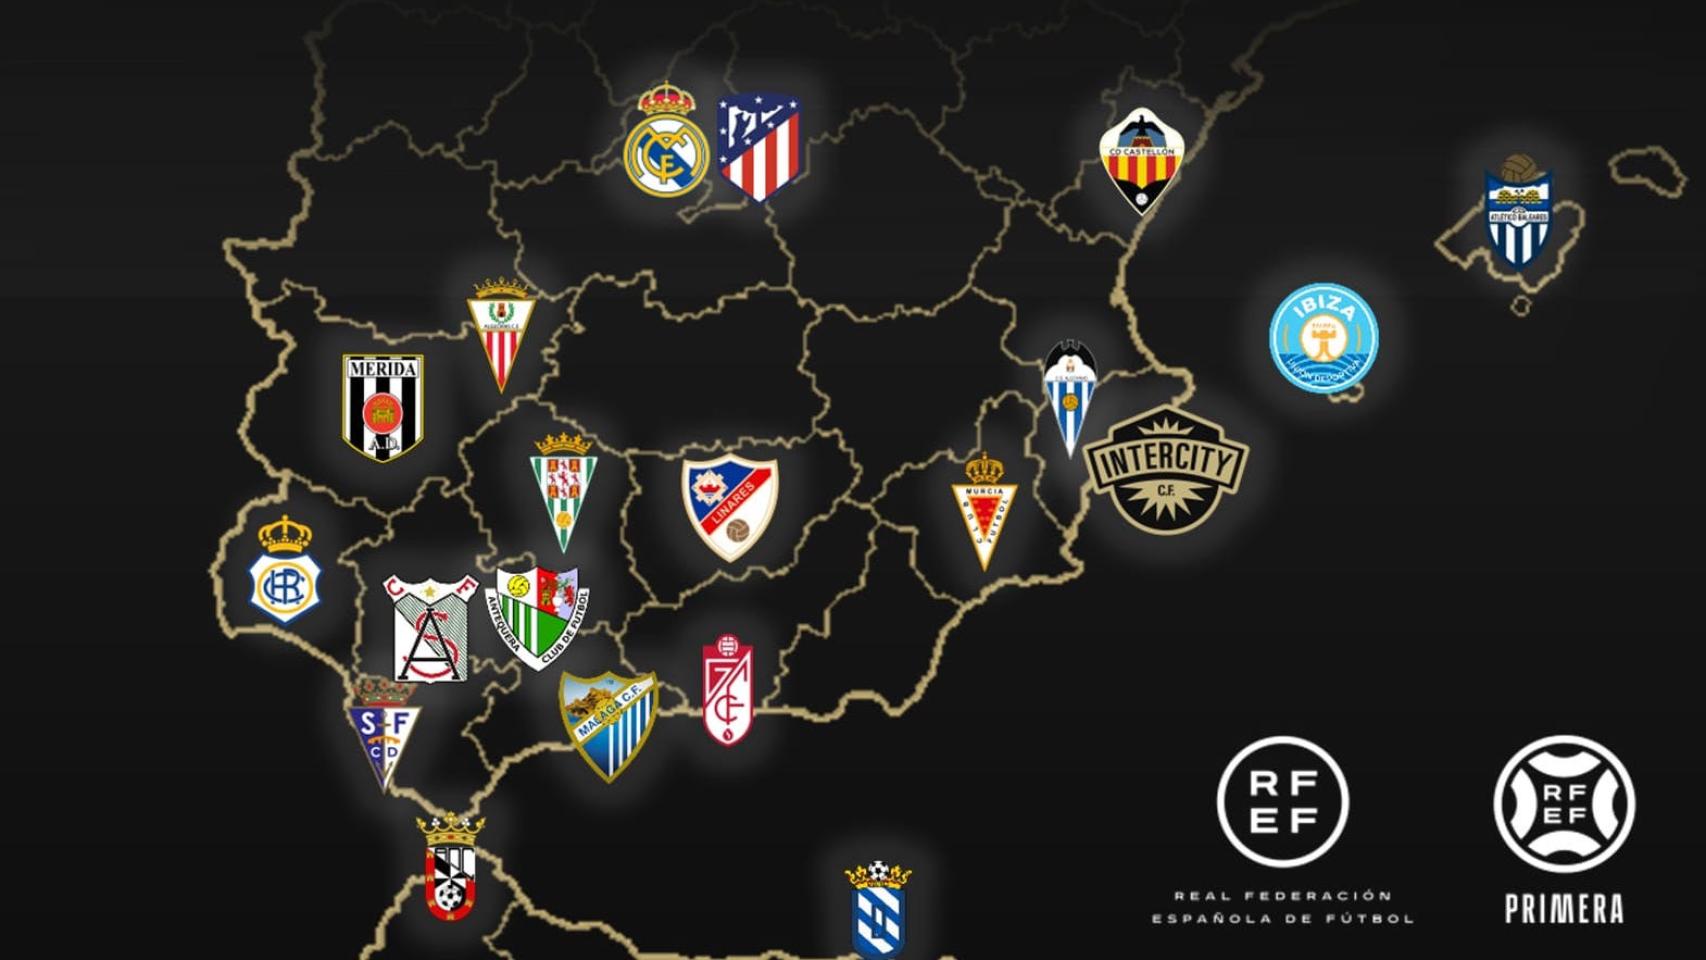 El mapa de los equipos que participan en Primera Federación para la temporada 23 / 24.